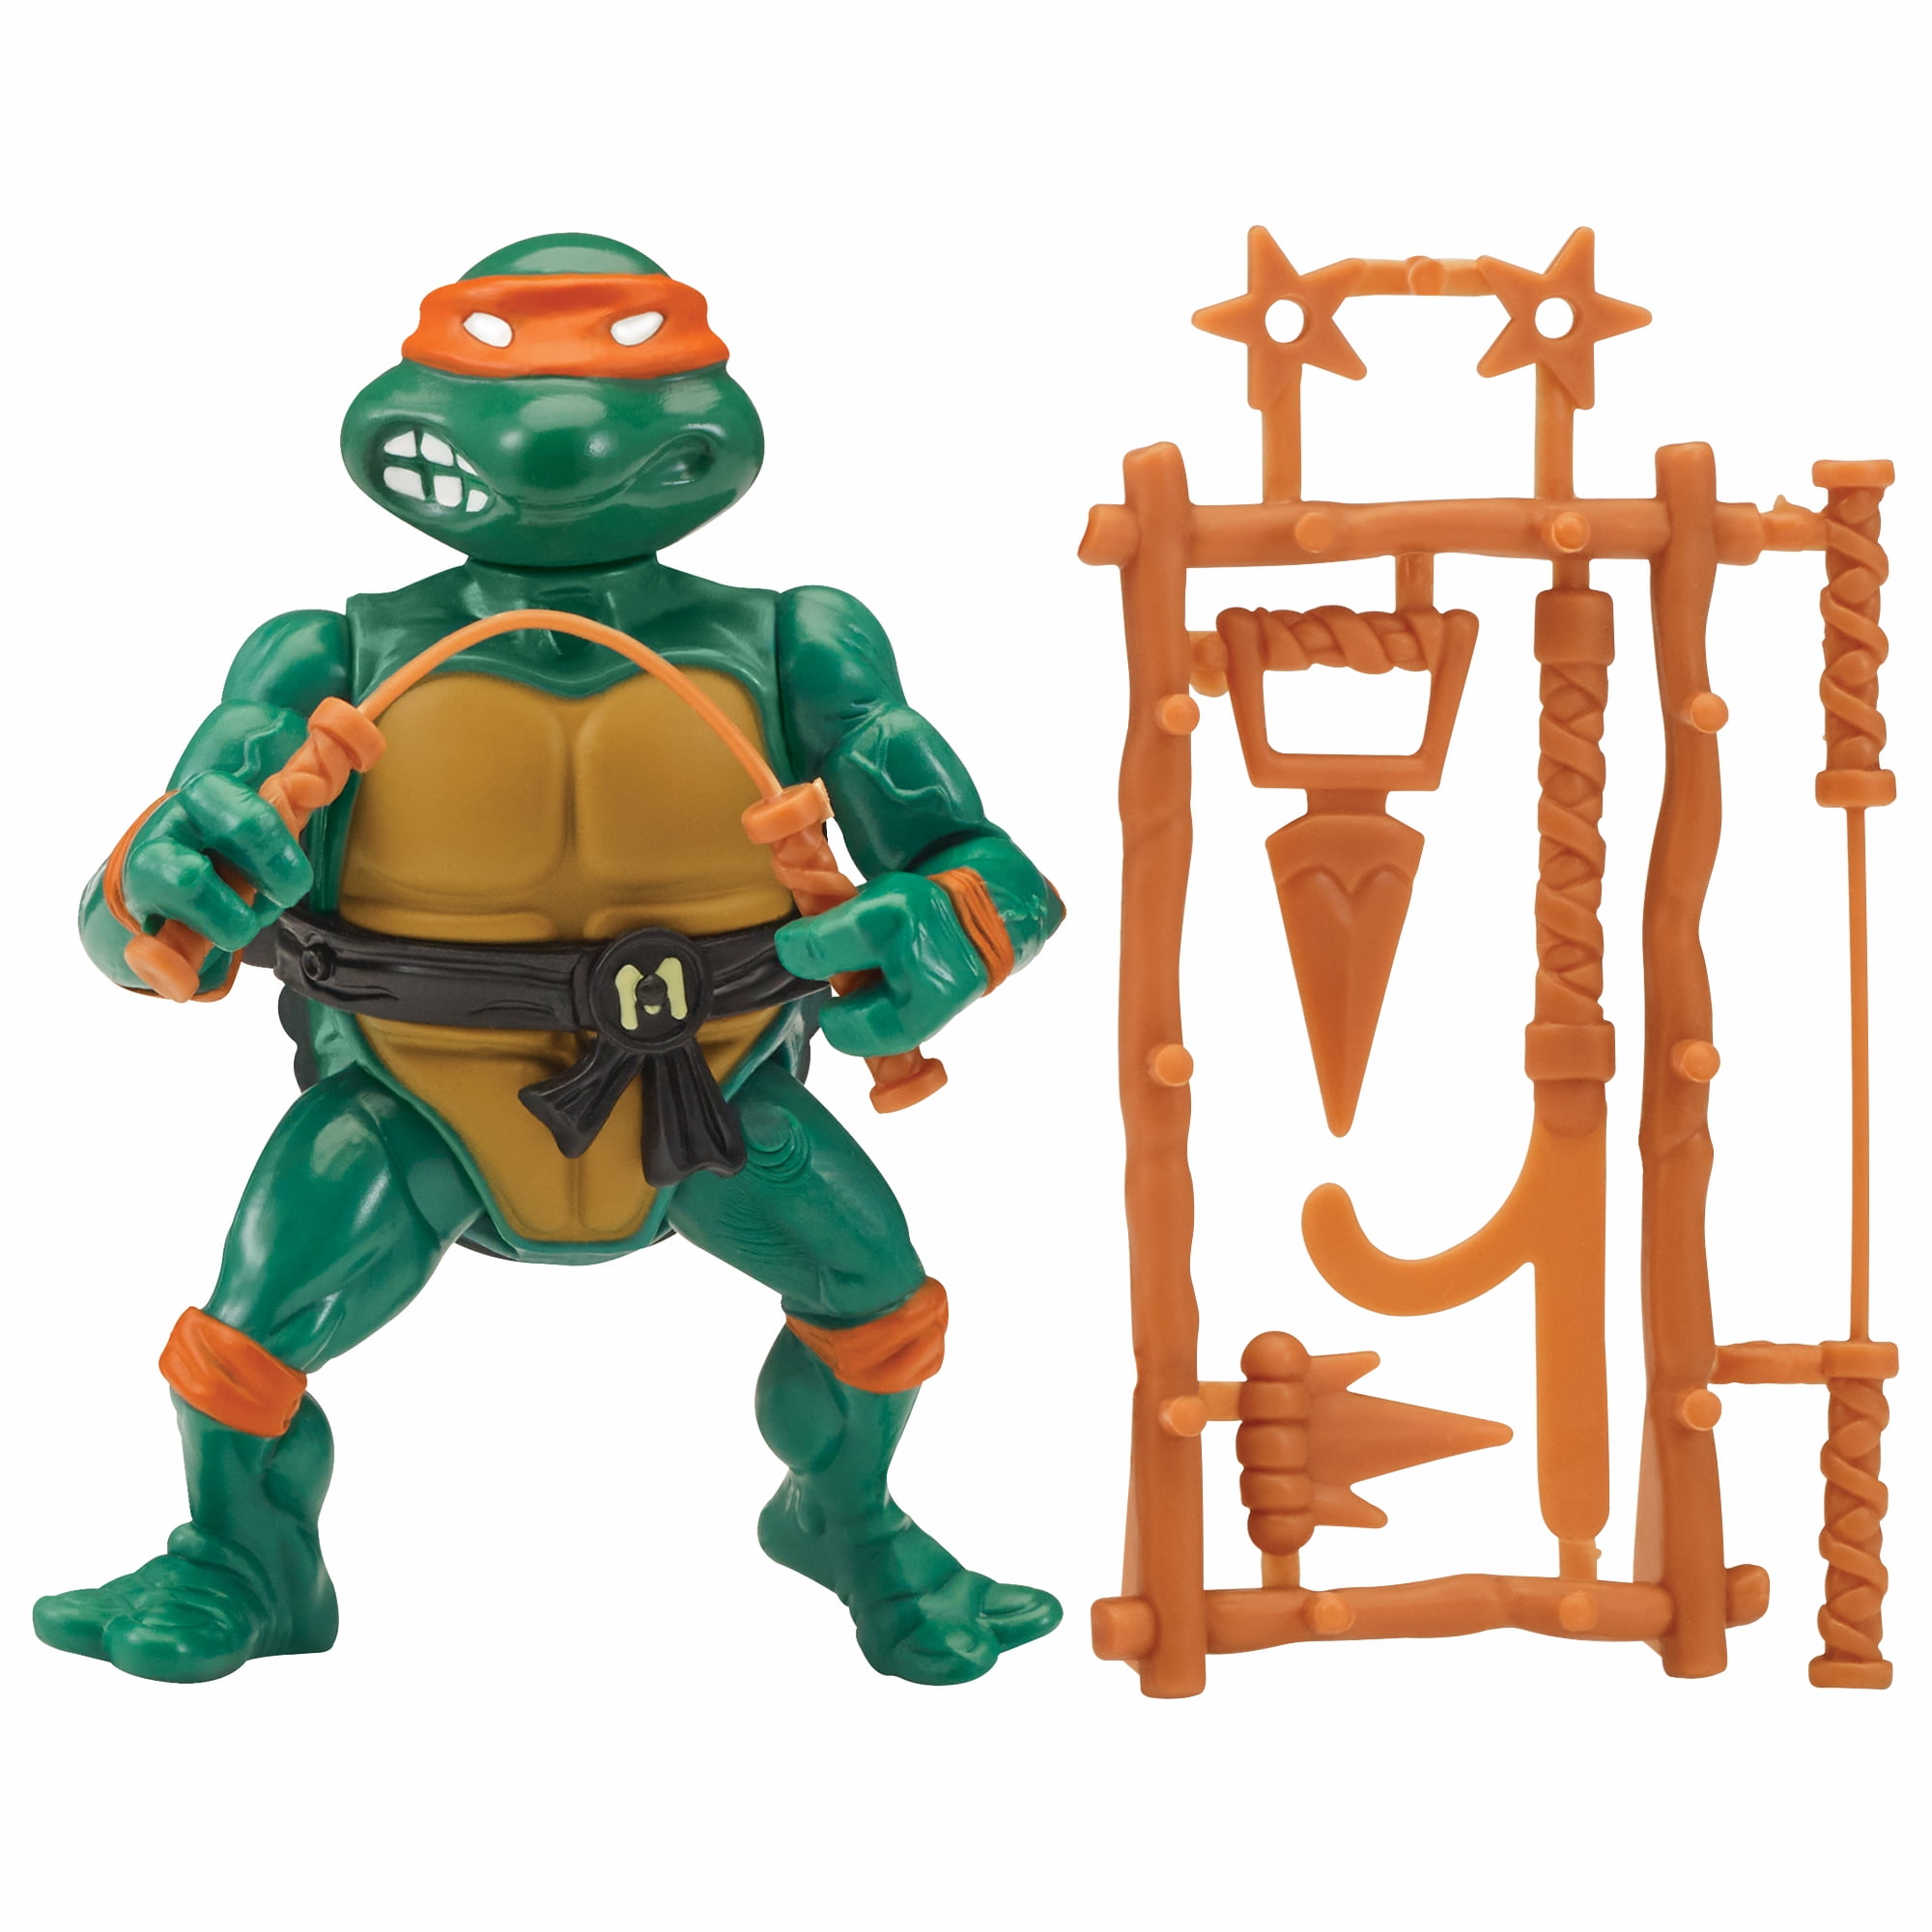 Classic 4PCS Teenage Mutant Ninja Turtles TMNT Figures Toys Cake Decor US STOCK 